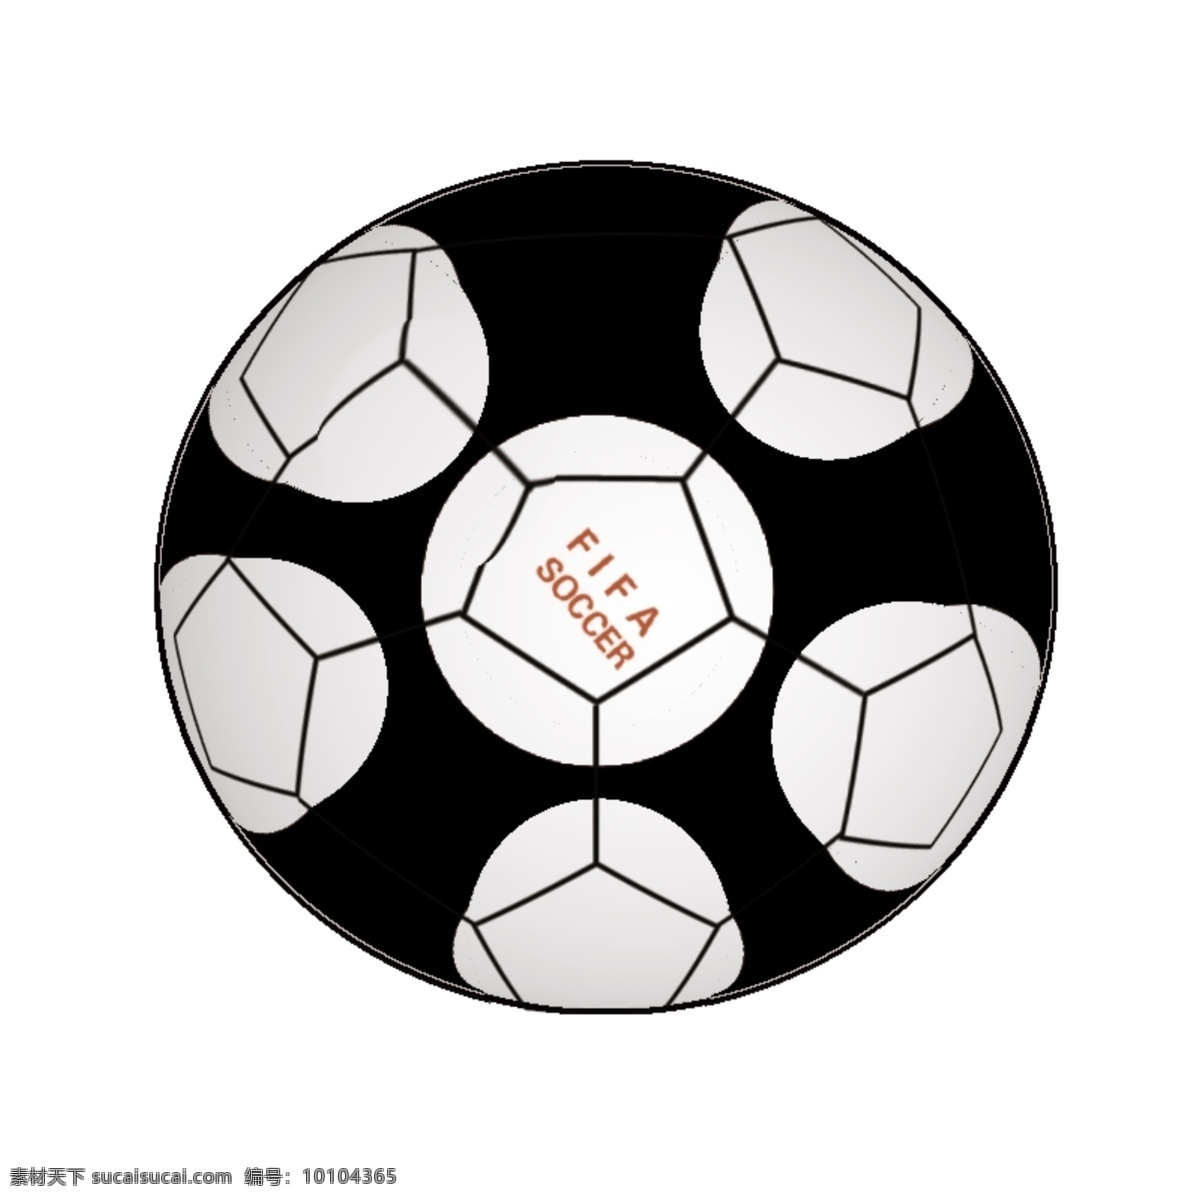 psd素材 广告设计模板 其他模版 球 源文件 运动 足球 足球素材下载 足球模板下载 运动球 运动足球 杂图 矢量图 日常生活